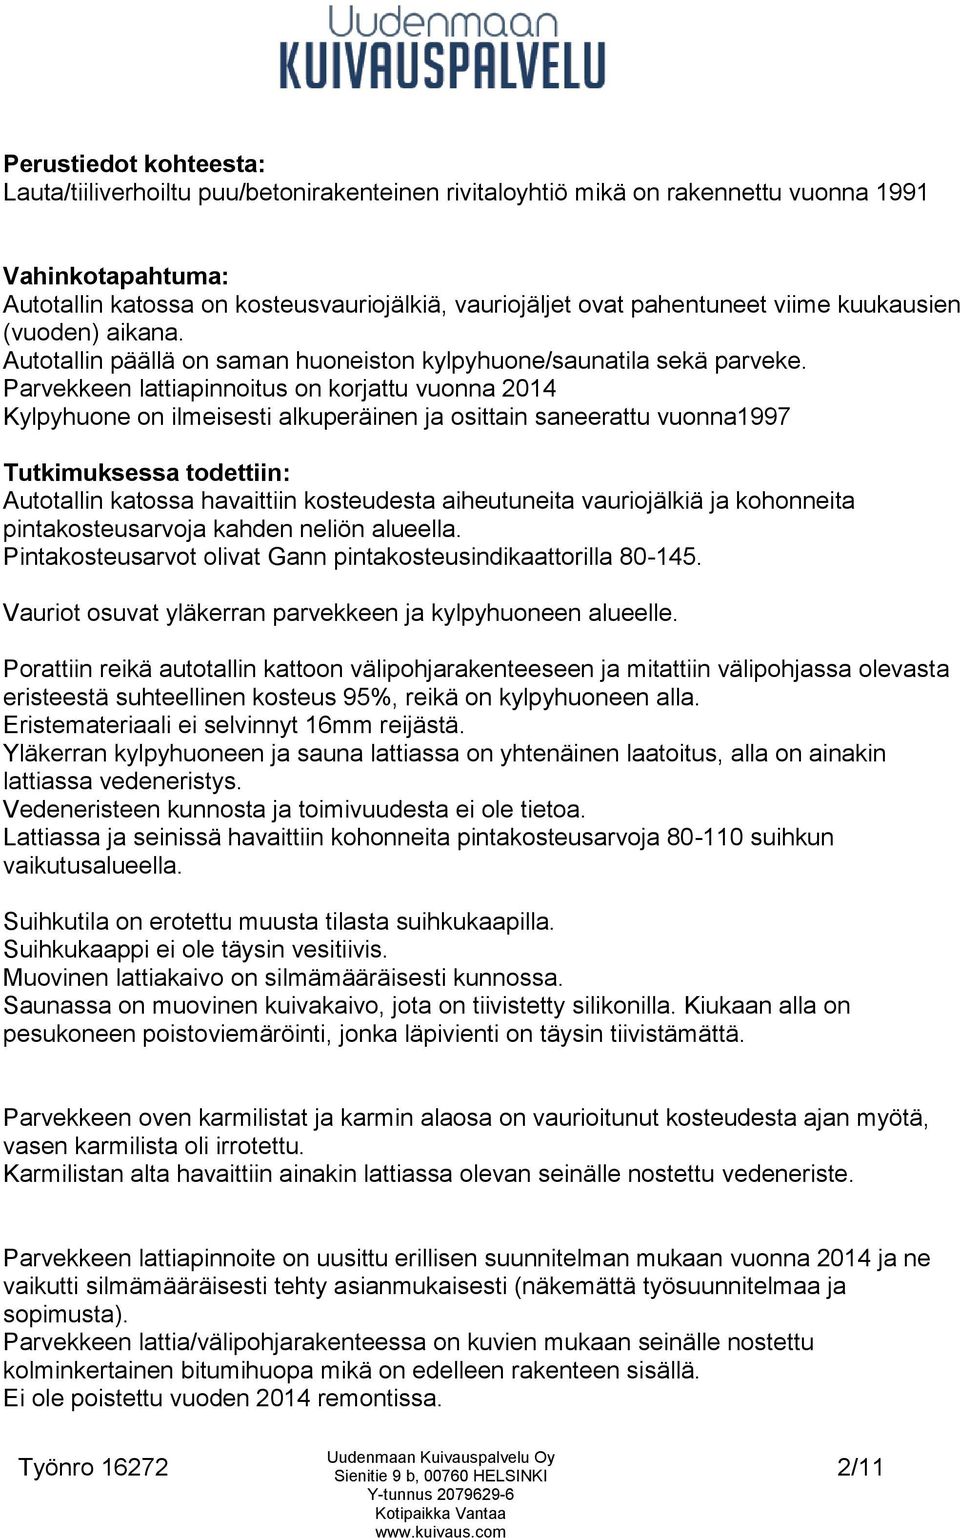 c/o Jaana Anttila Kangas p Vilkenintie 21 A Helsinki Kosteusmittaus, syyn  selvitys ja raportointi. - PDF Free Download